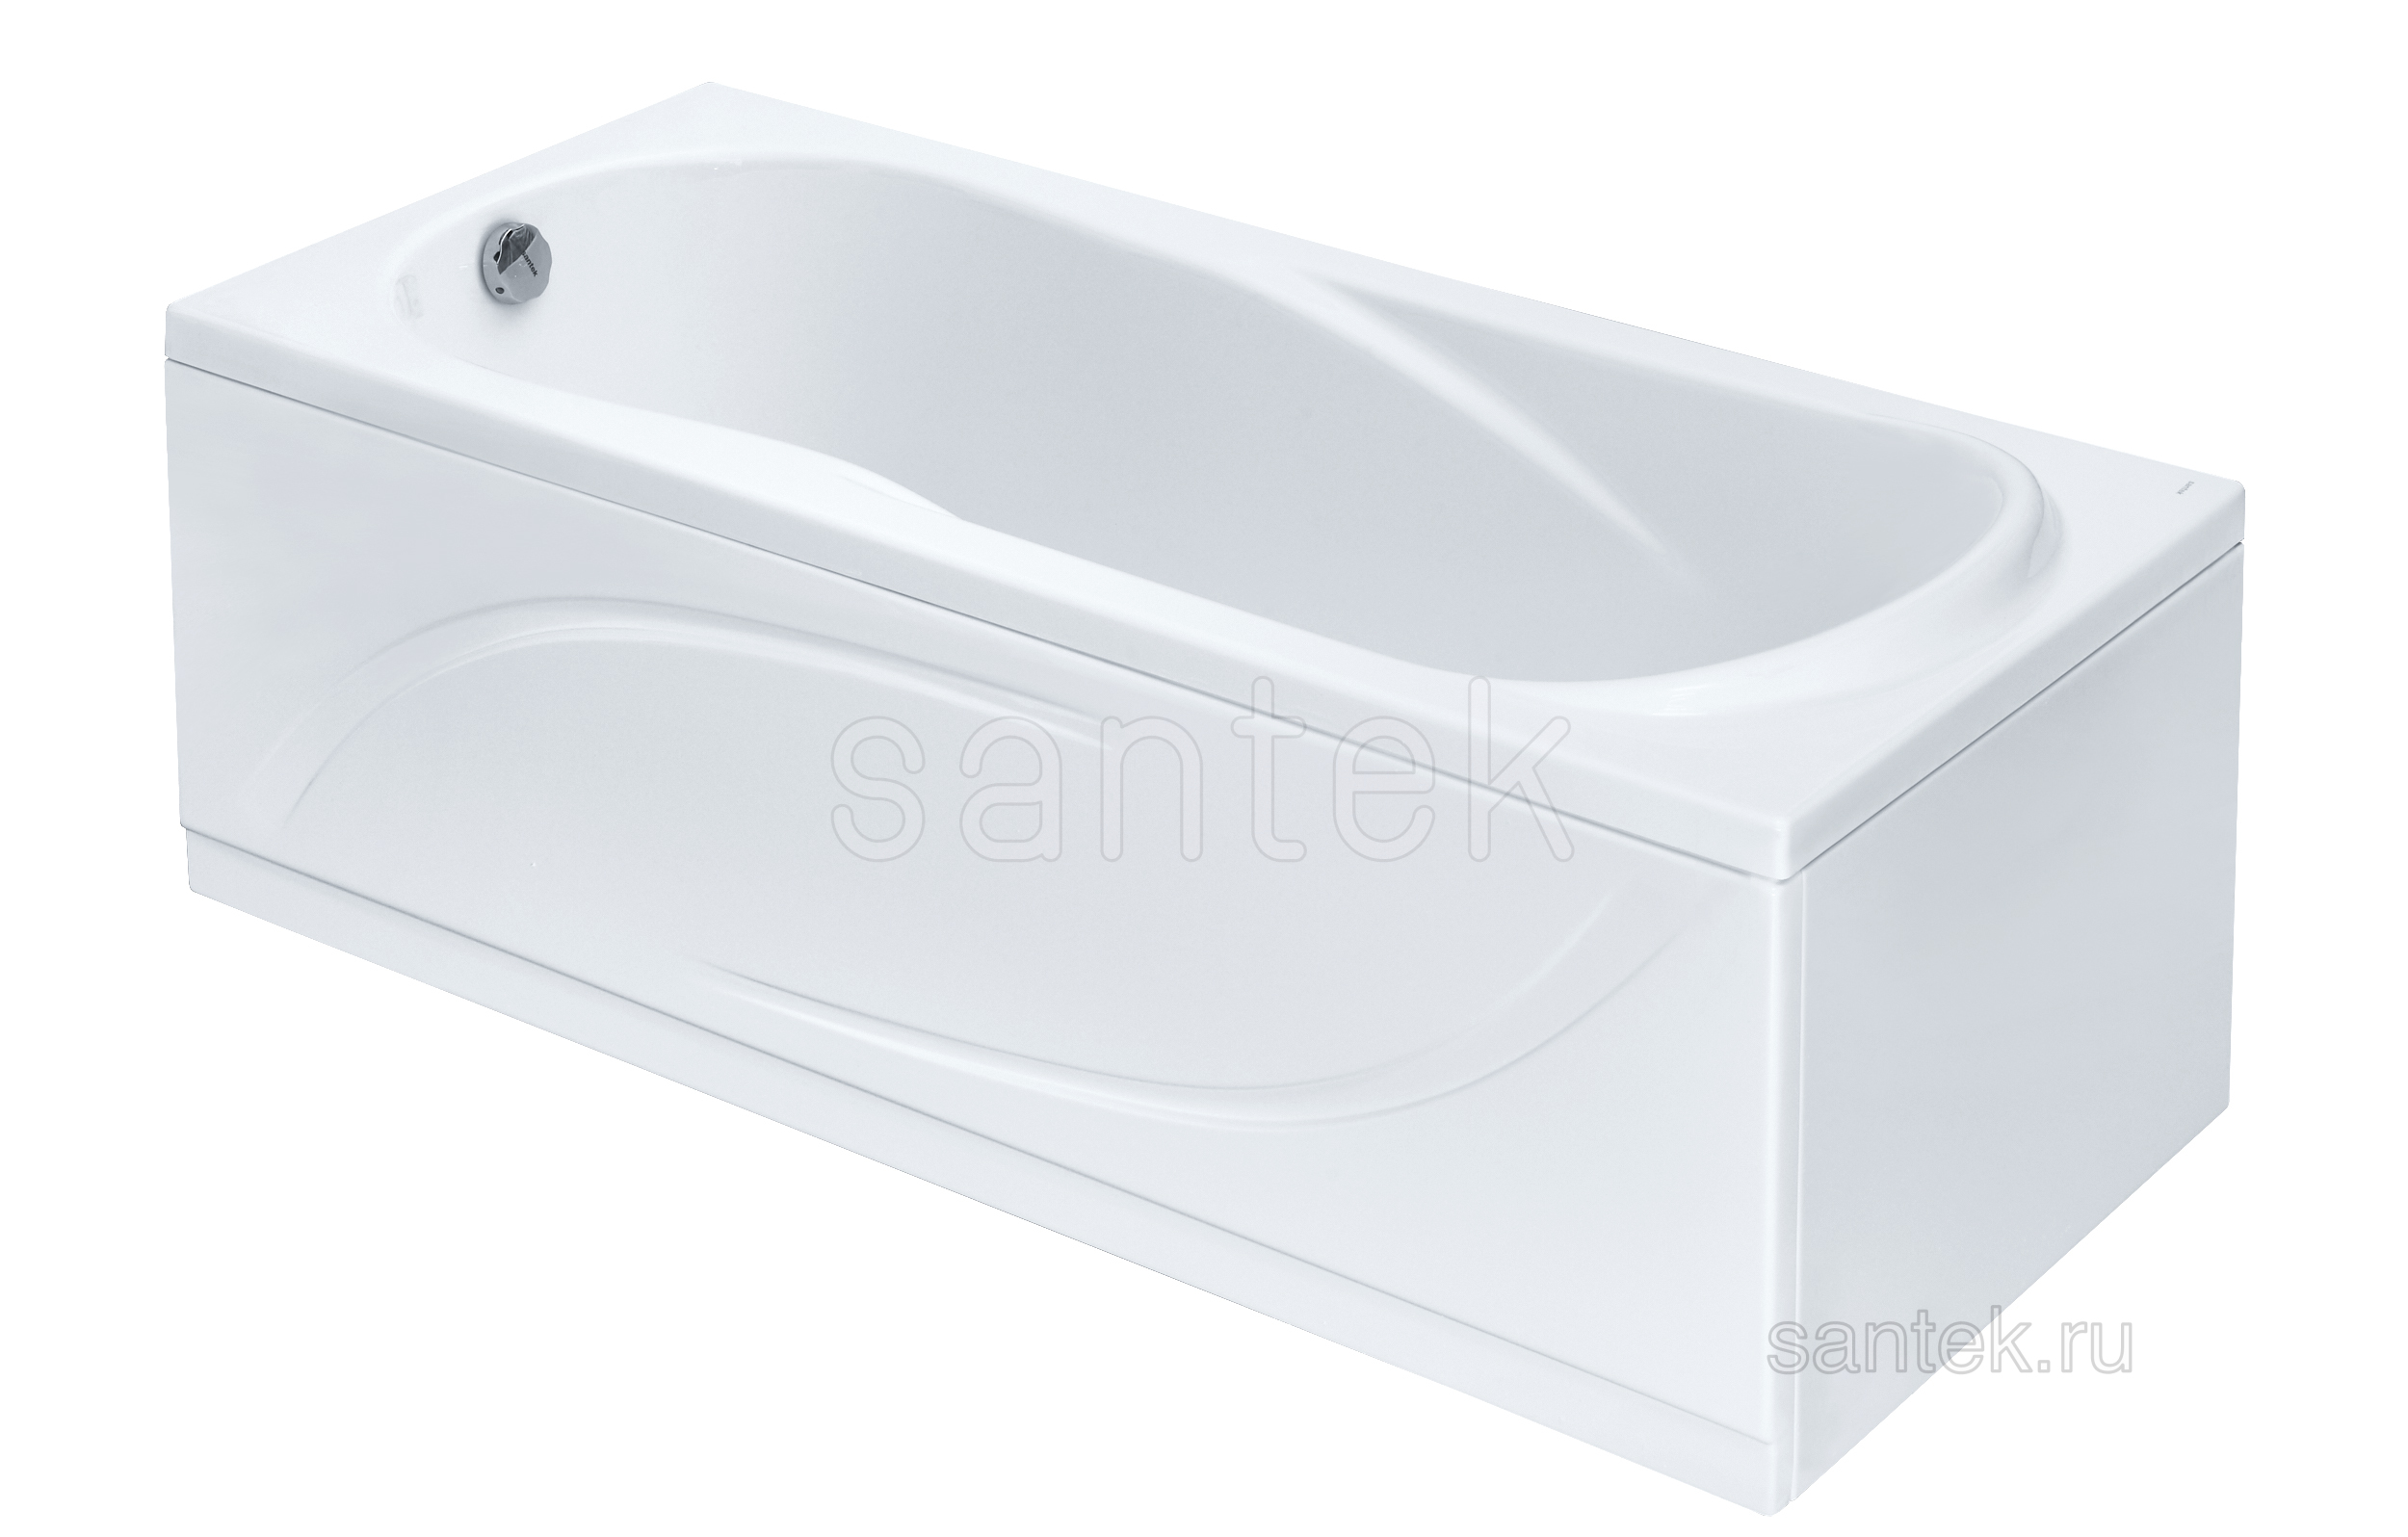 Акриловая ванна Santek Каледония 160х75 прямоугольная белая 1WH302388